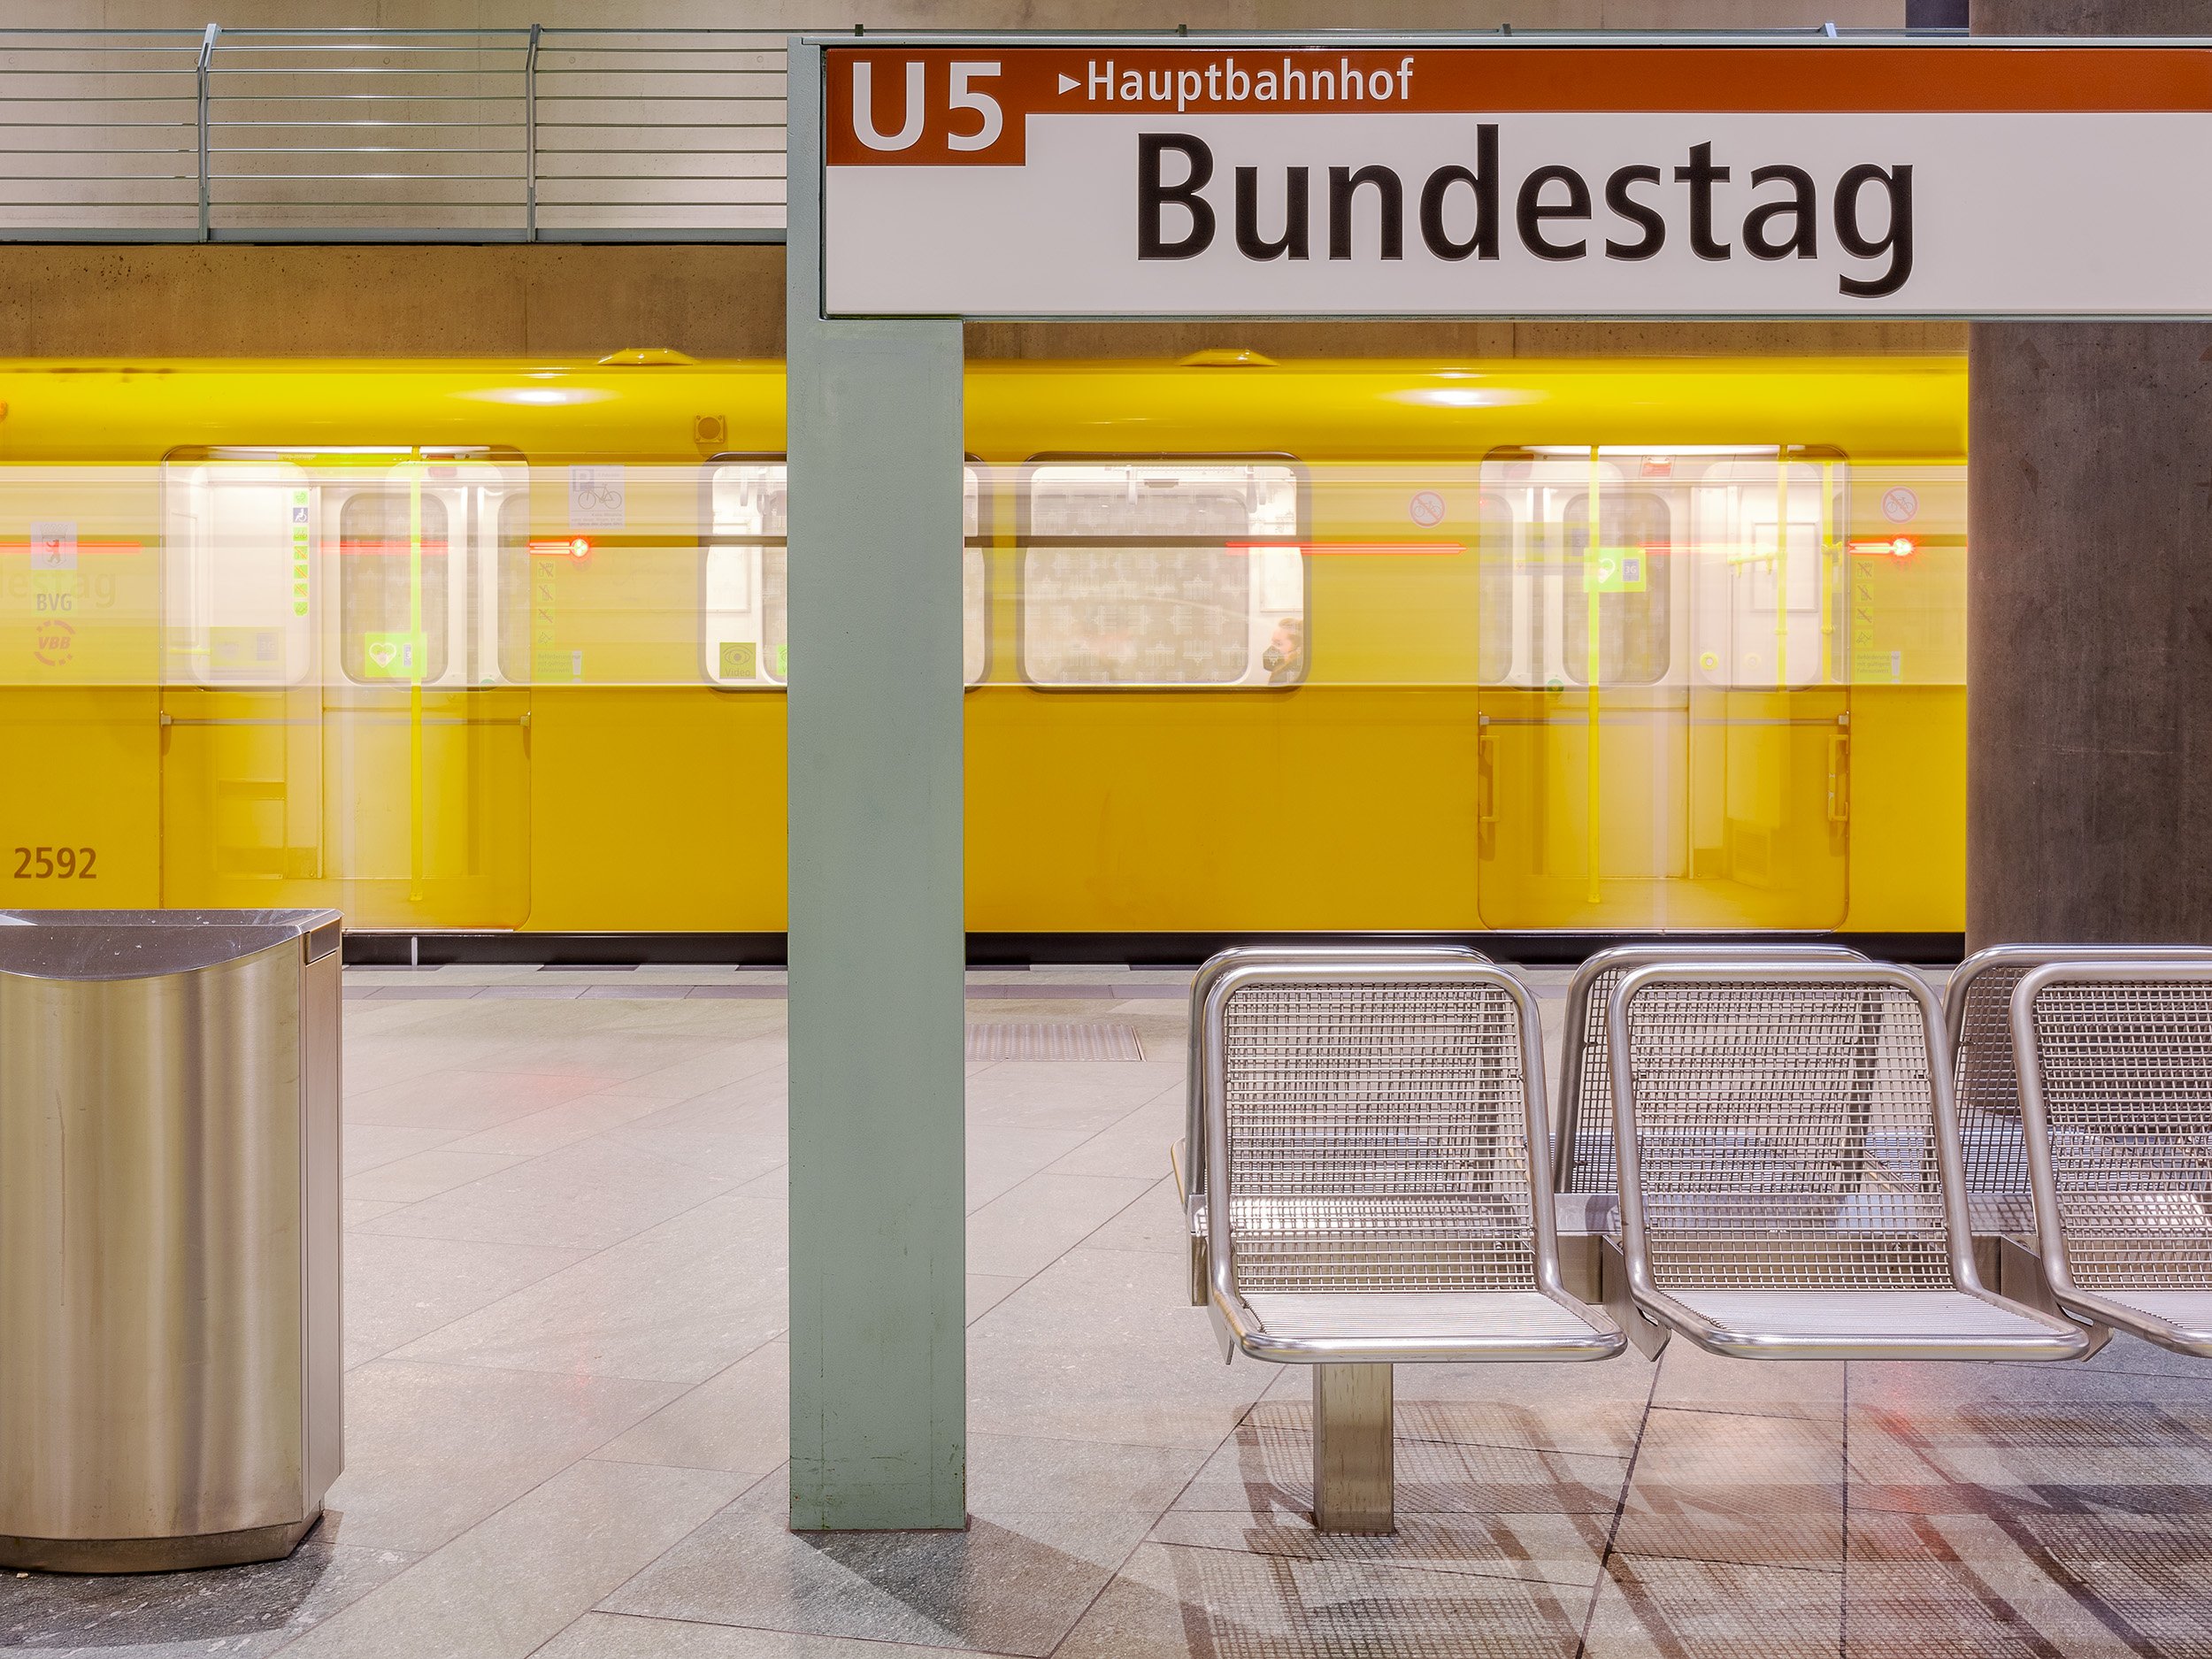 U-Bahn am Bundestag in Berlin (Lichtzieher)